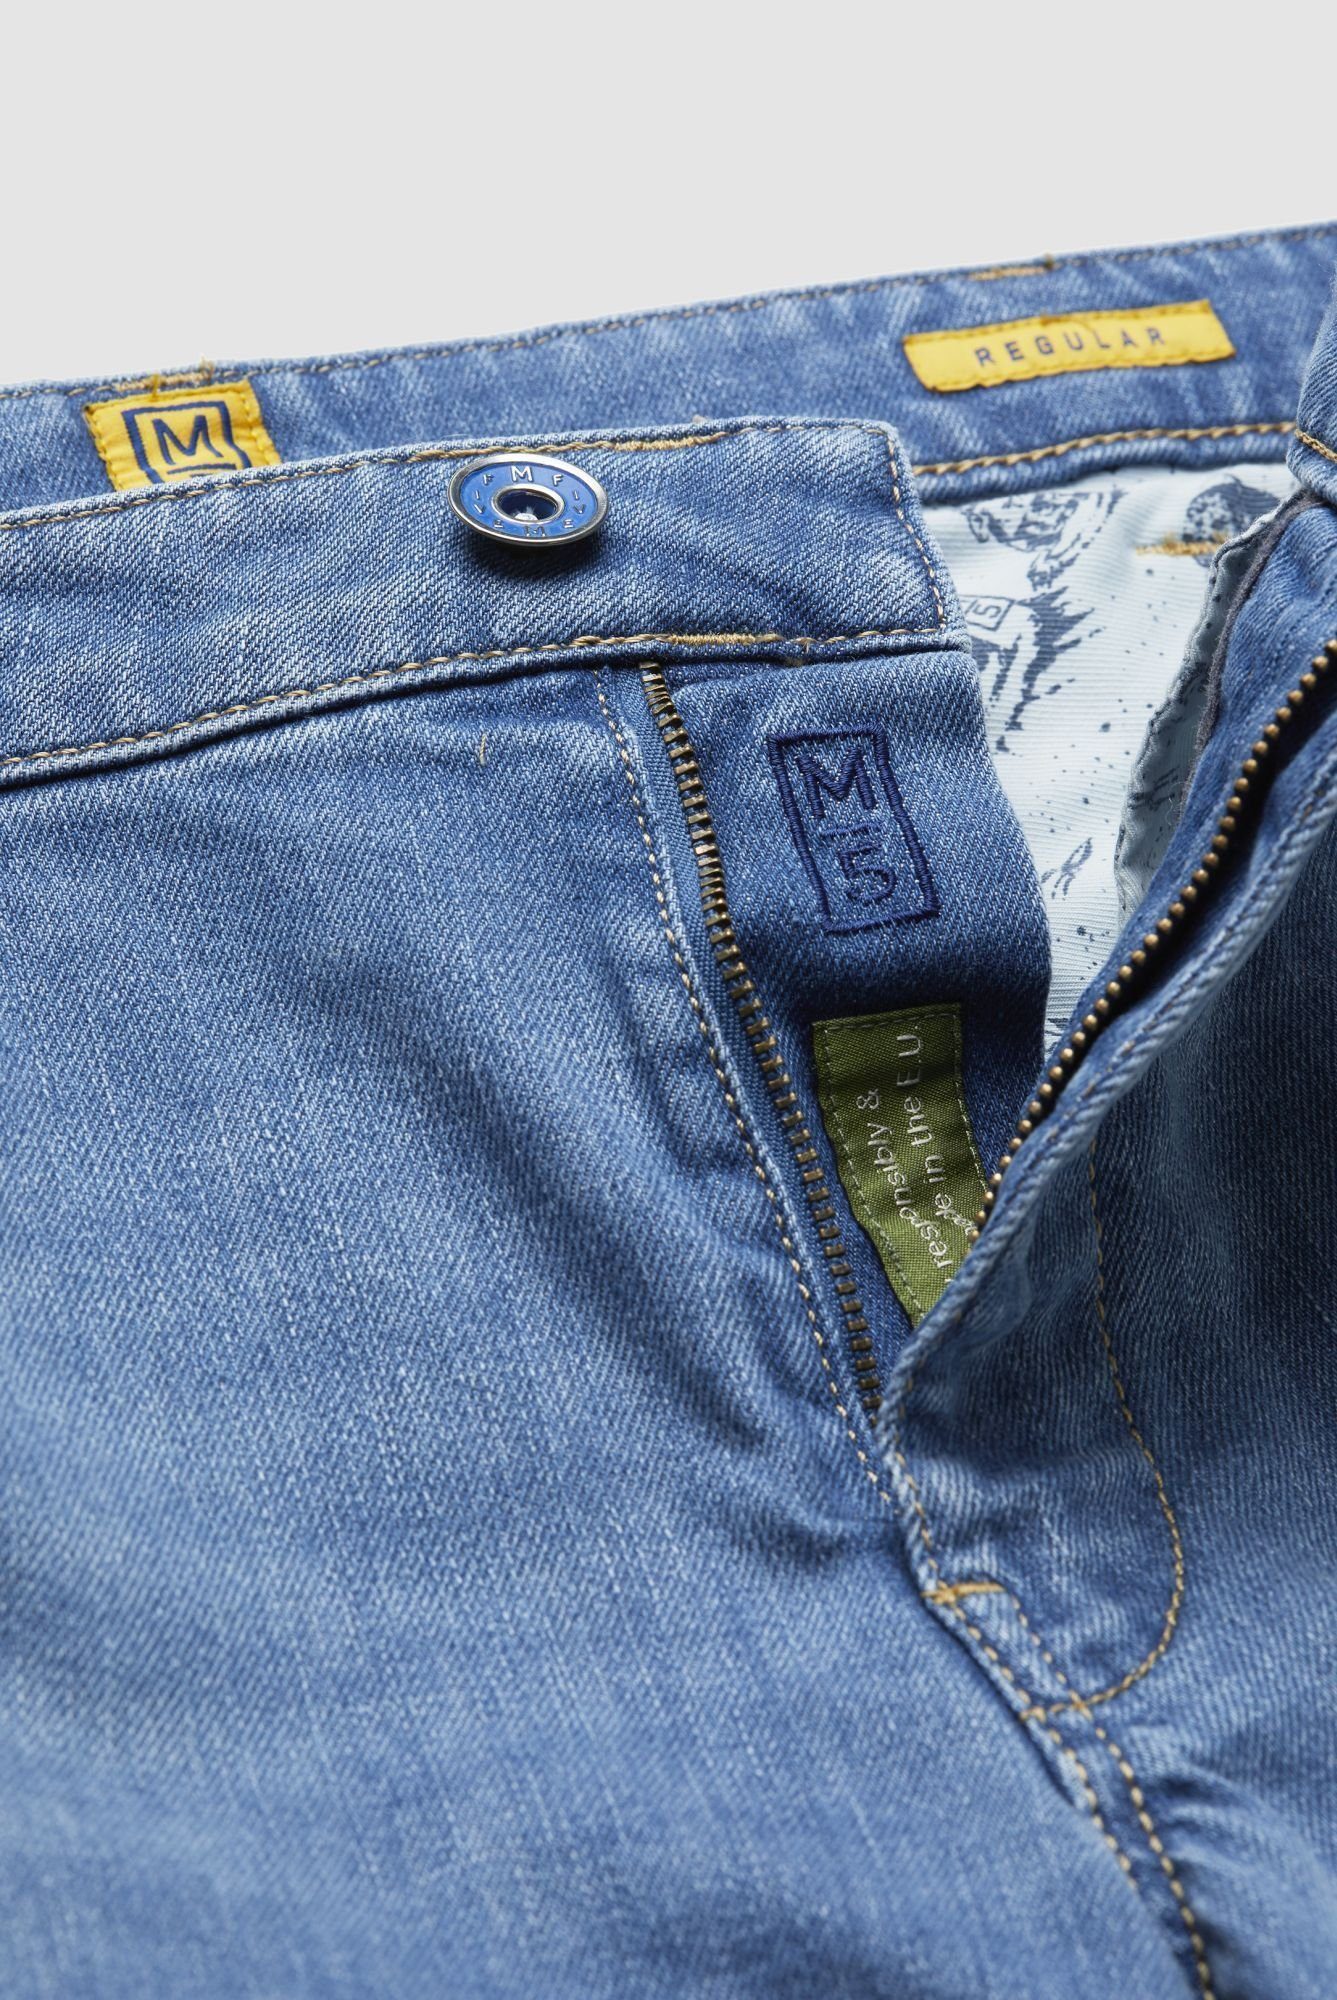 Fit Jeans Regular M5 blau 6209 Regular-fit-Jeans Style Five Pocket MEYER im